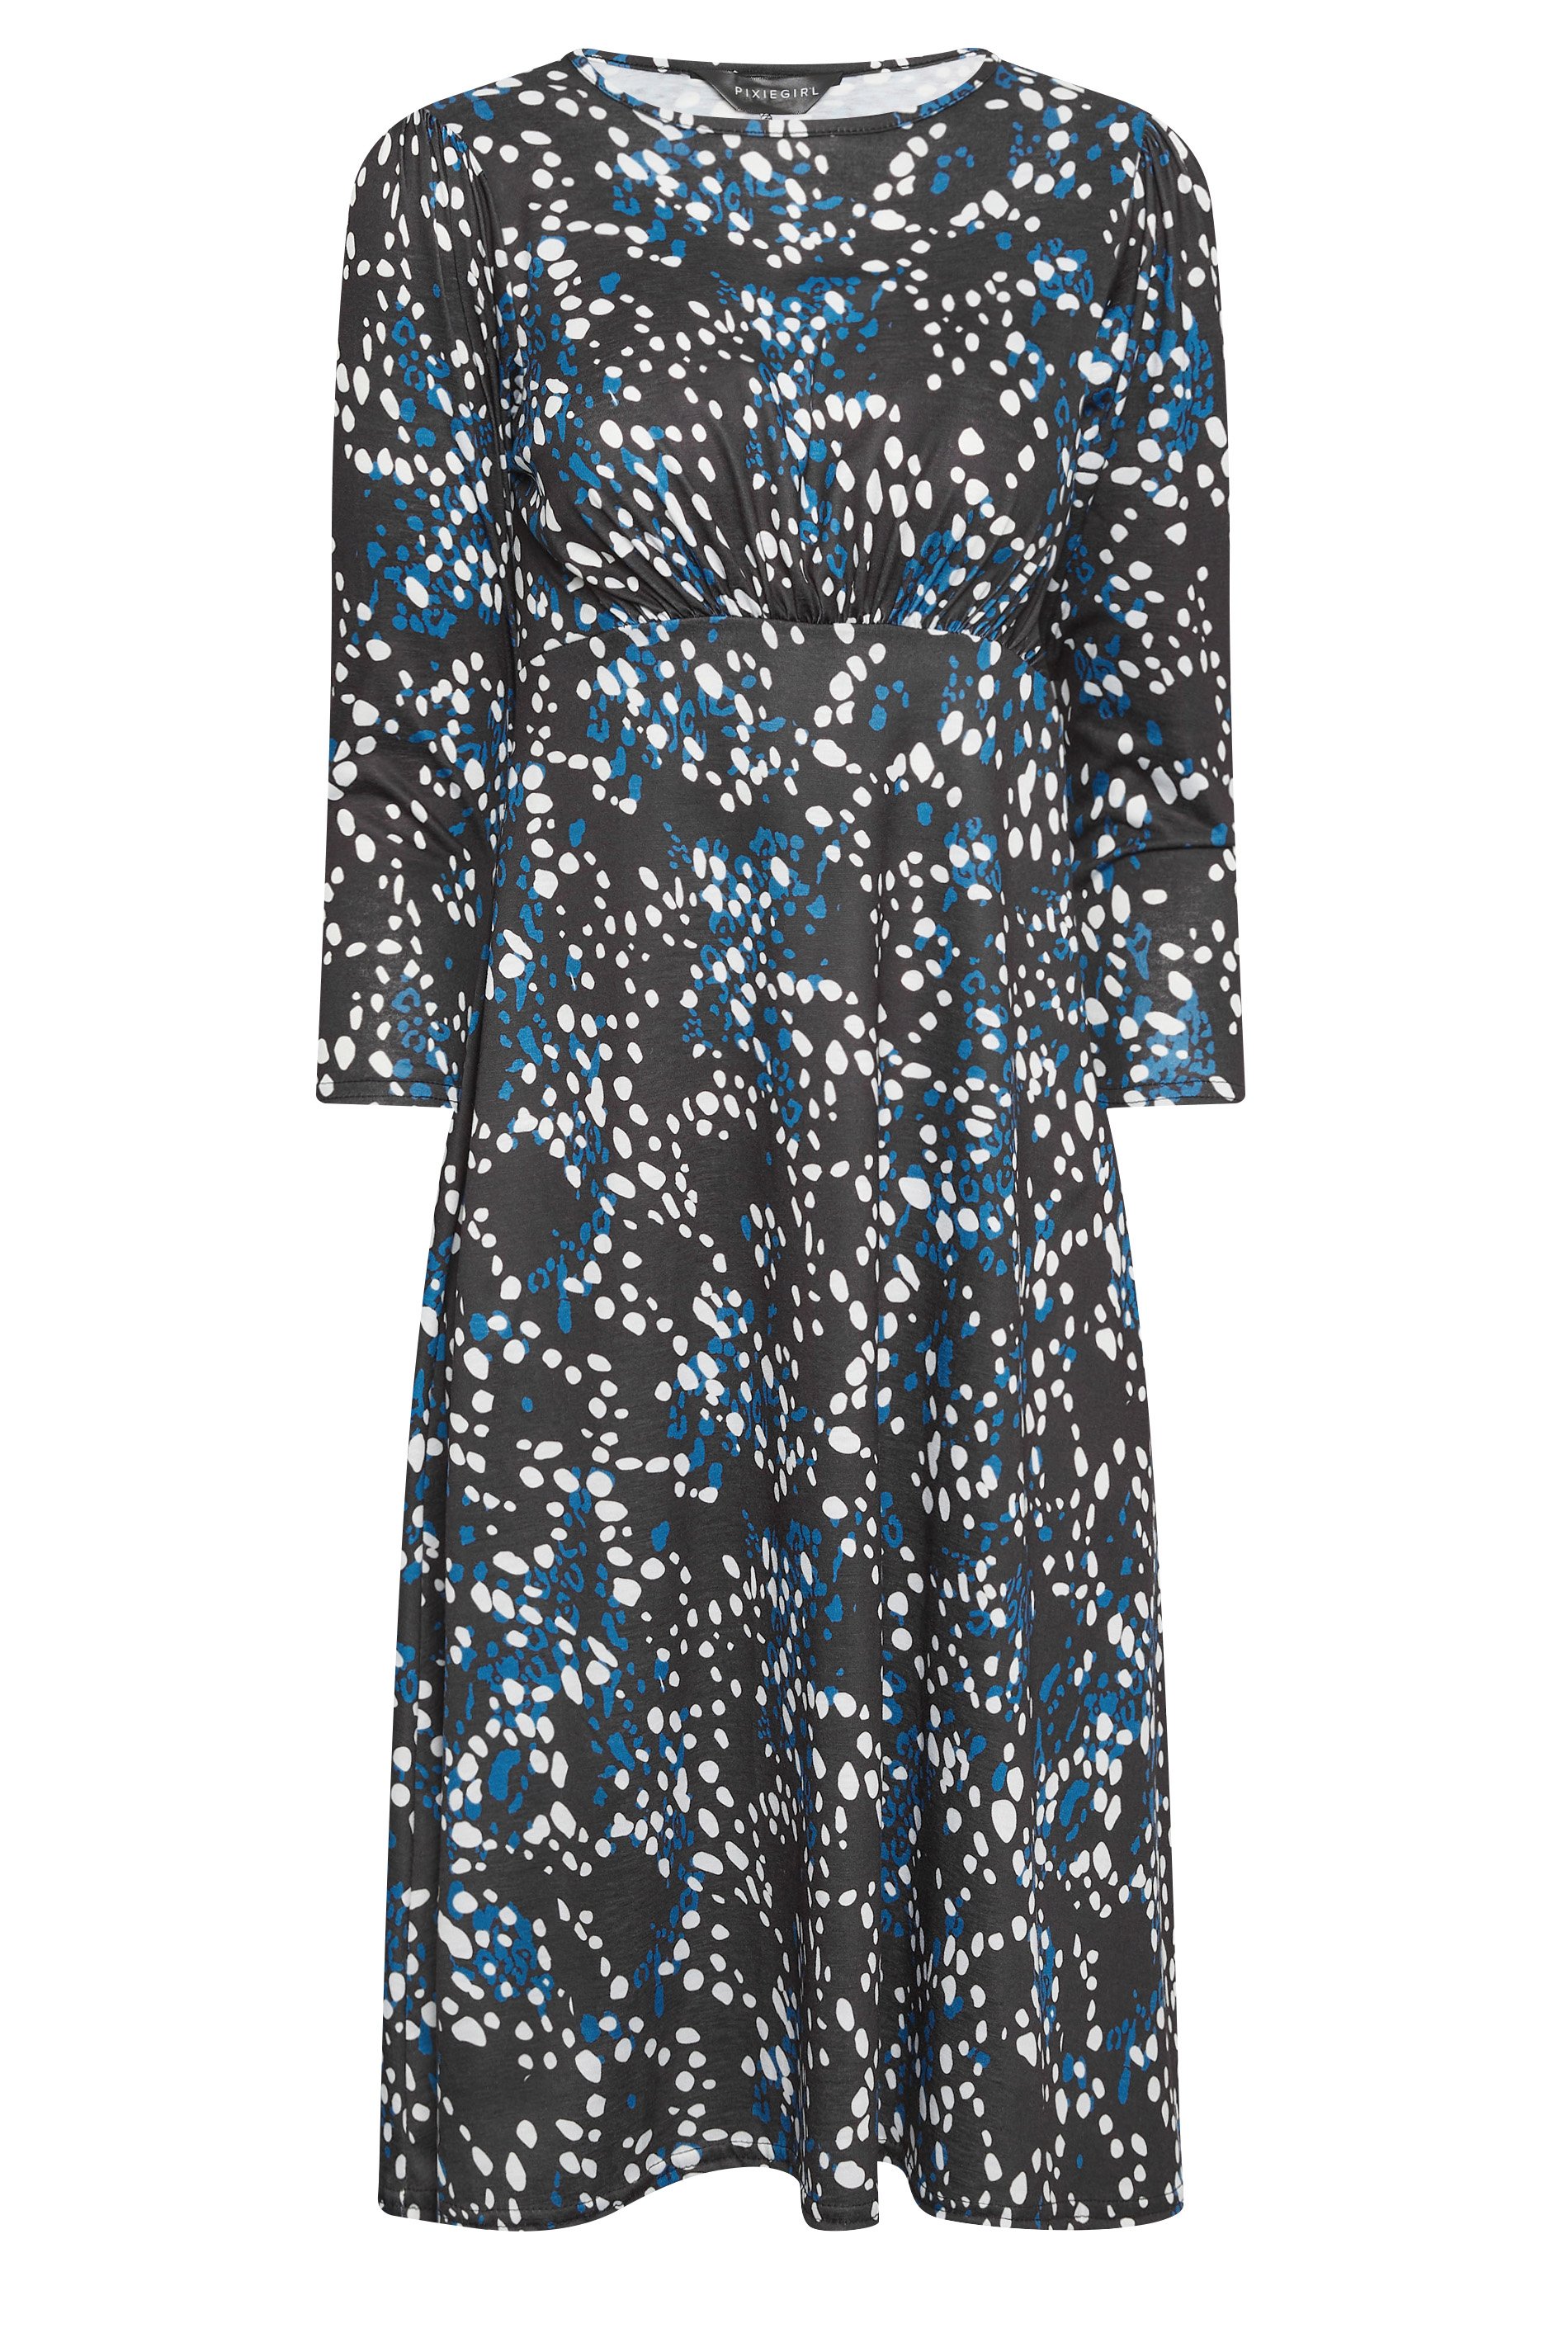 PixieGirl Blue Spot Print Midi Dress | PixieGirl